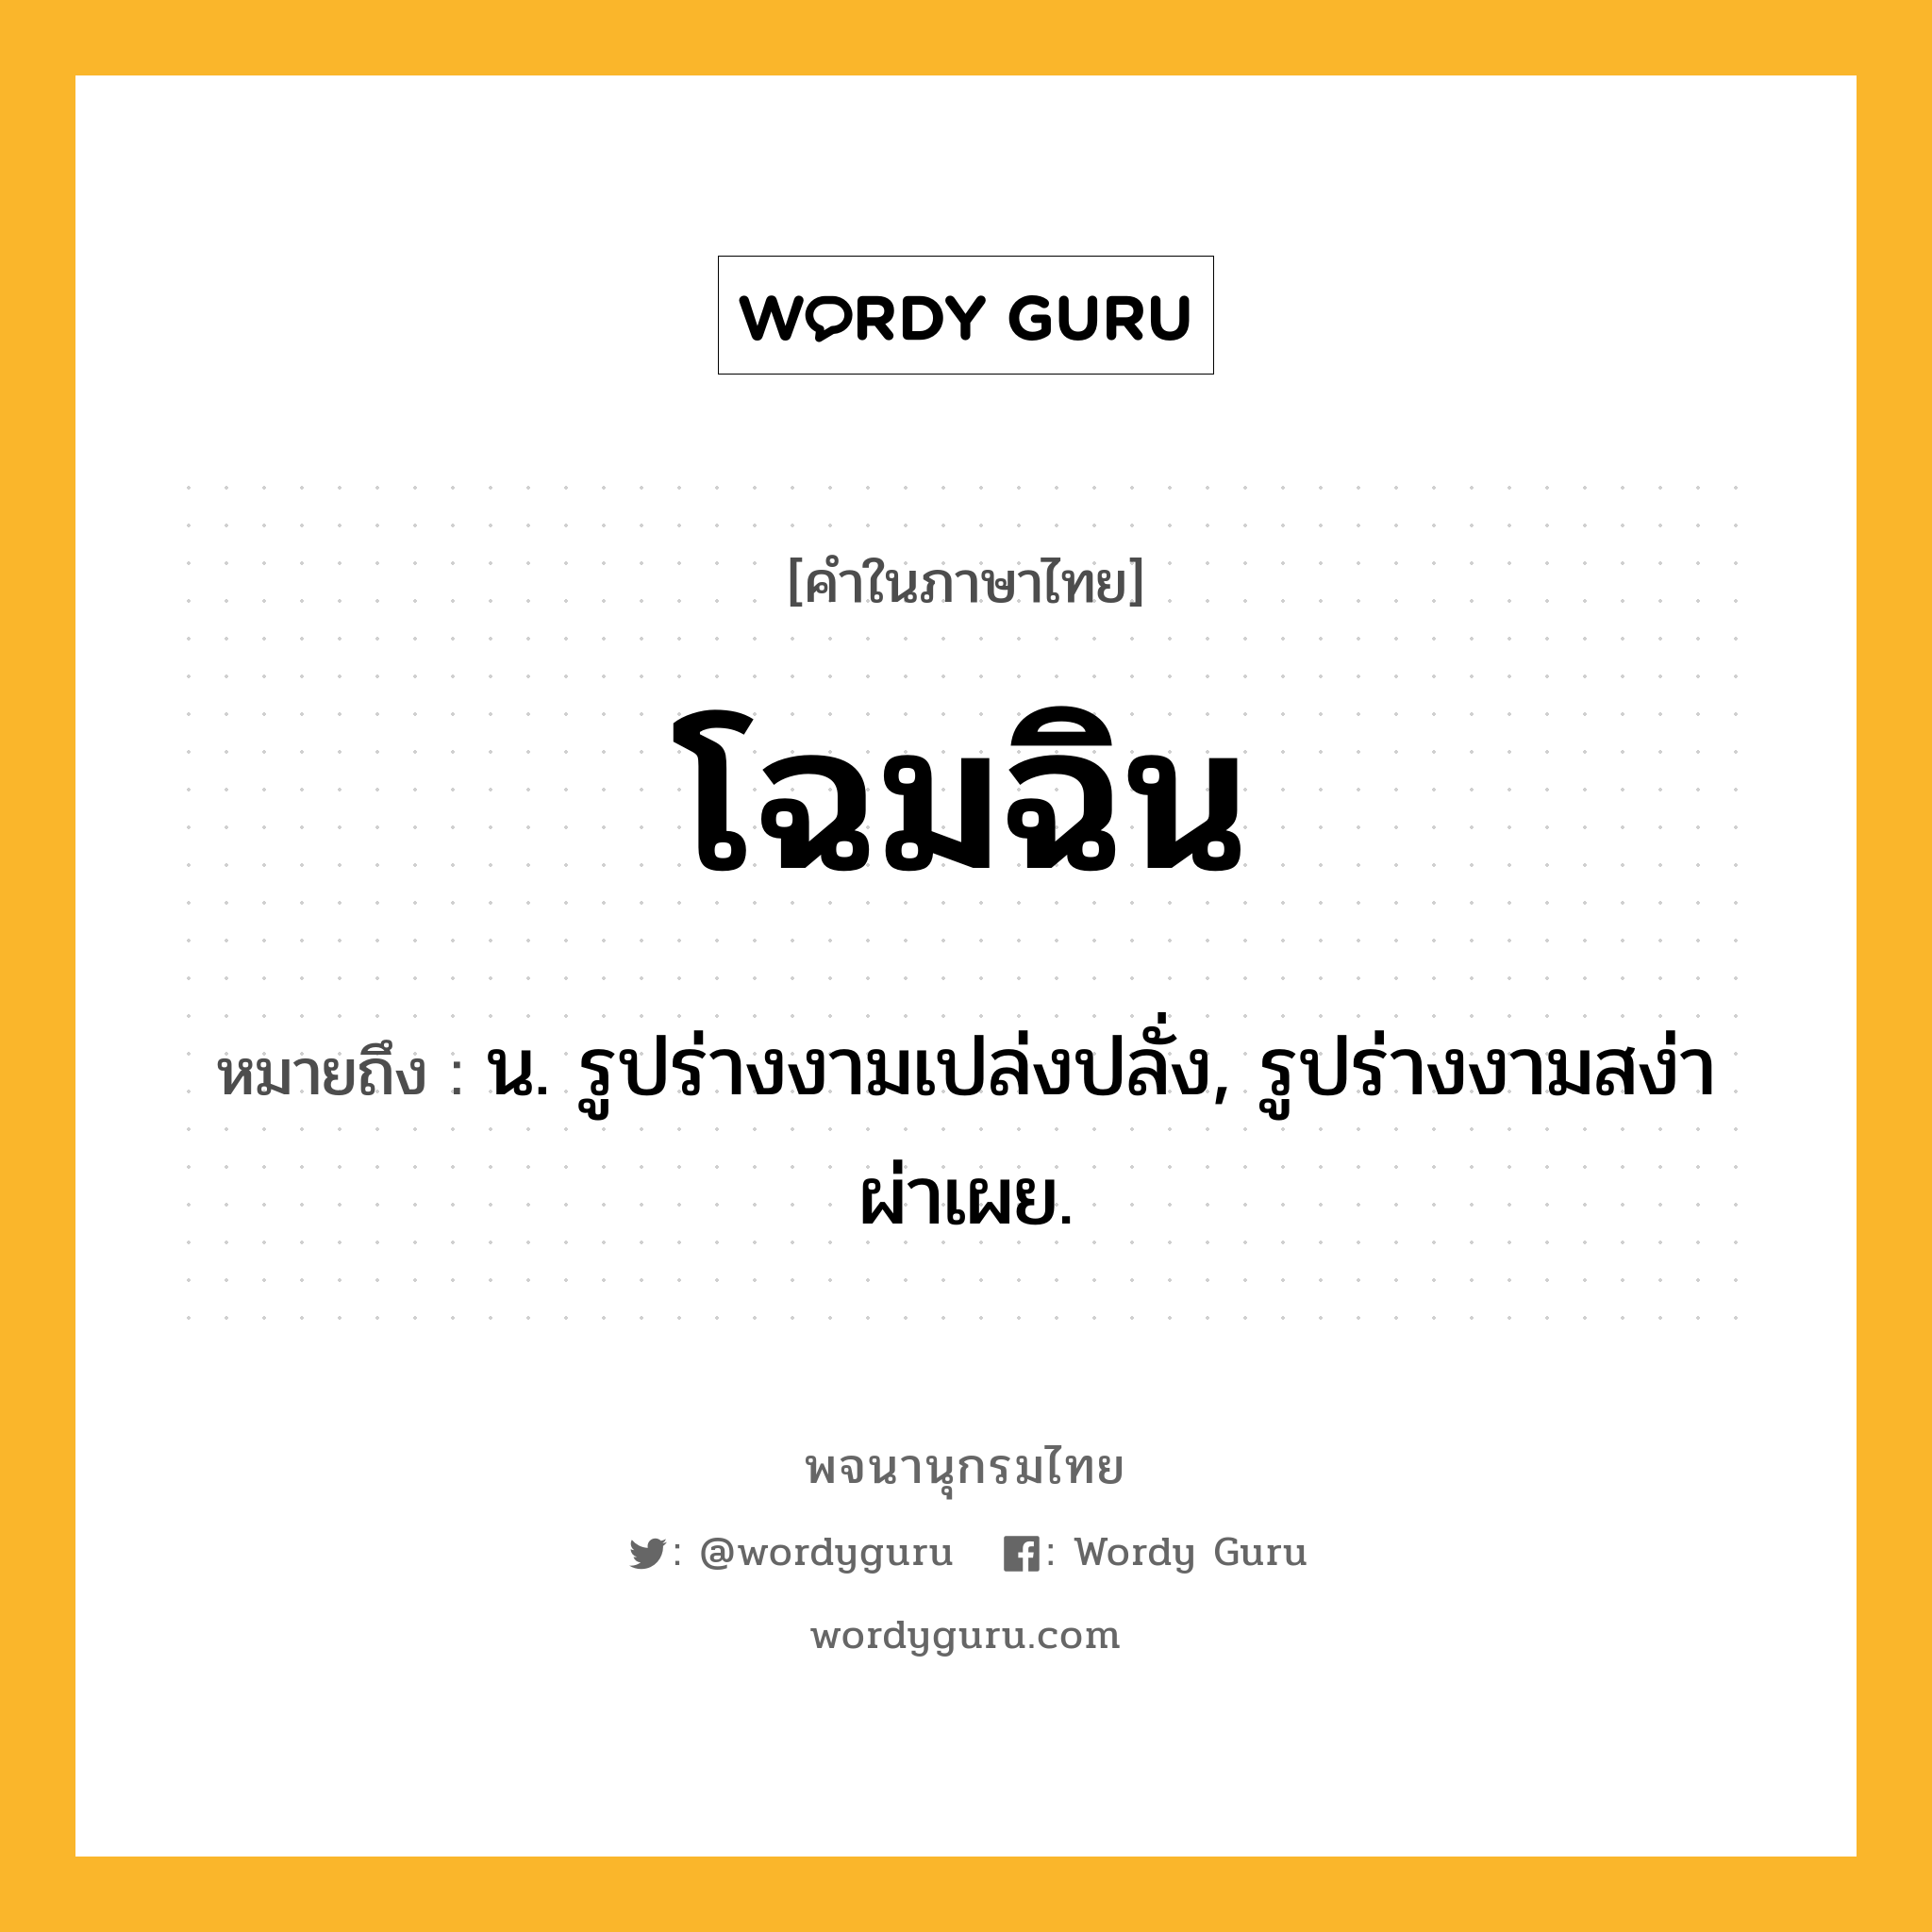 โฉมฉิน ความหมาย หมายถึงอะไร?, คำในภาษาไทย โฉมฉิน หมายถึง น. รูปร่างงามเปล่งปลั่ง, รูปร่างงามสง่าผ่าเผย.